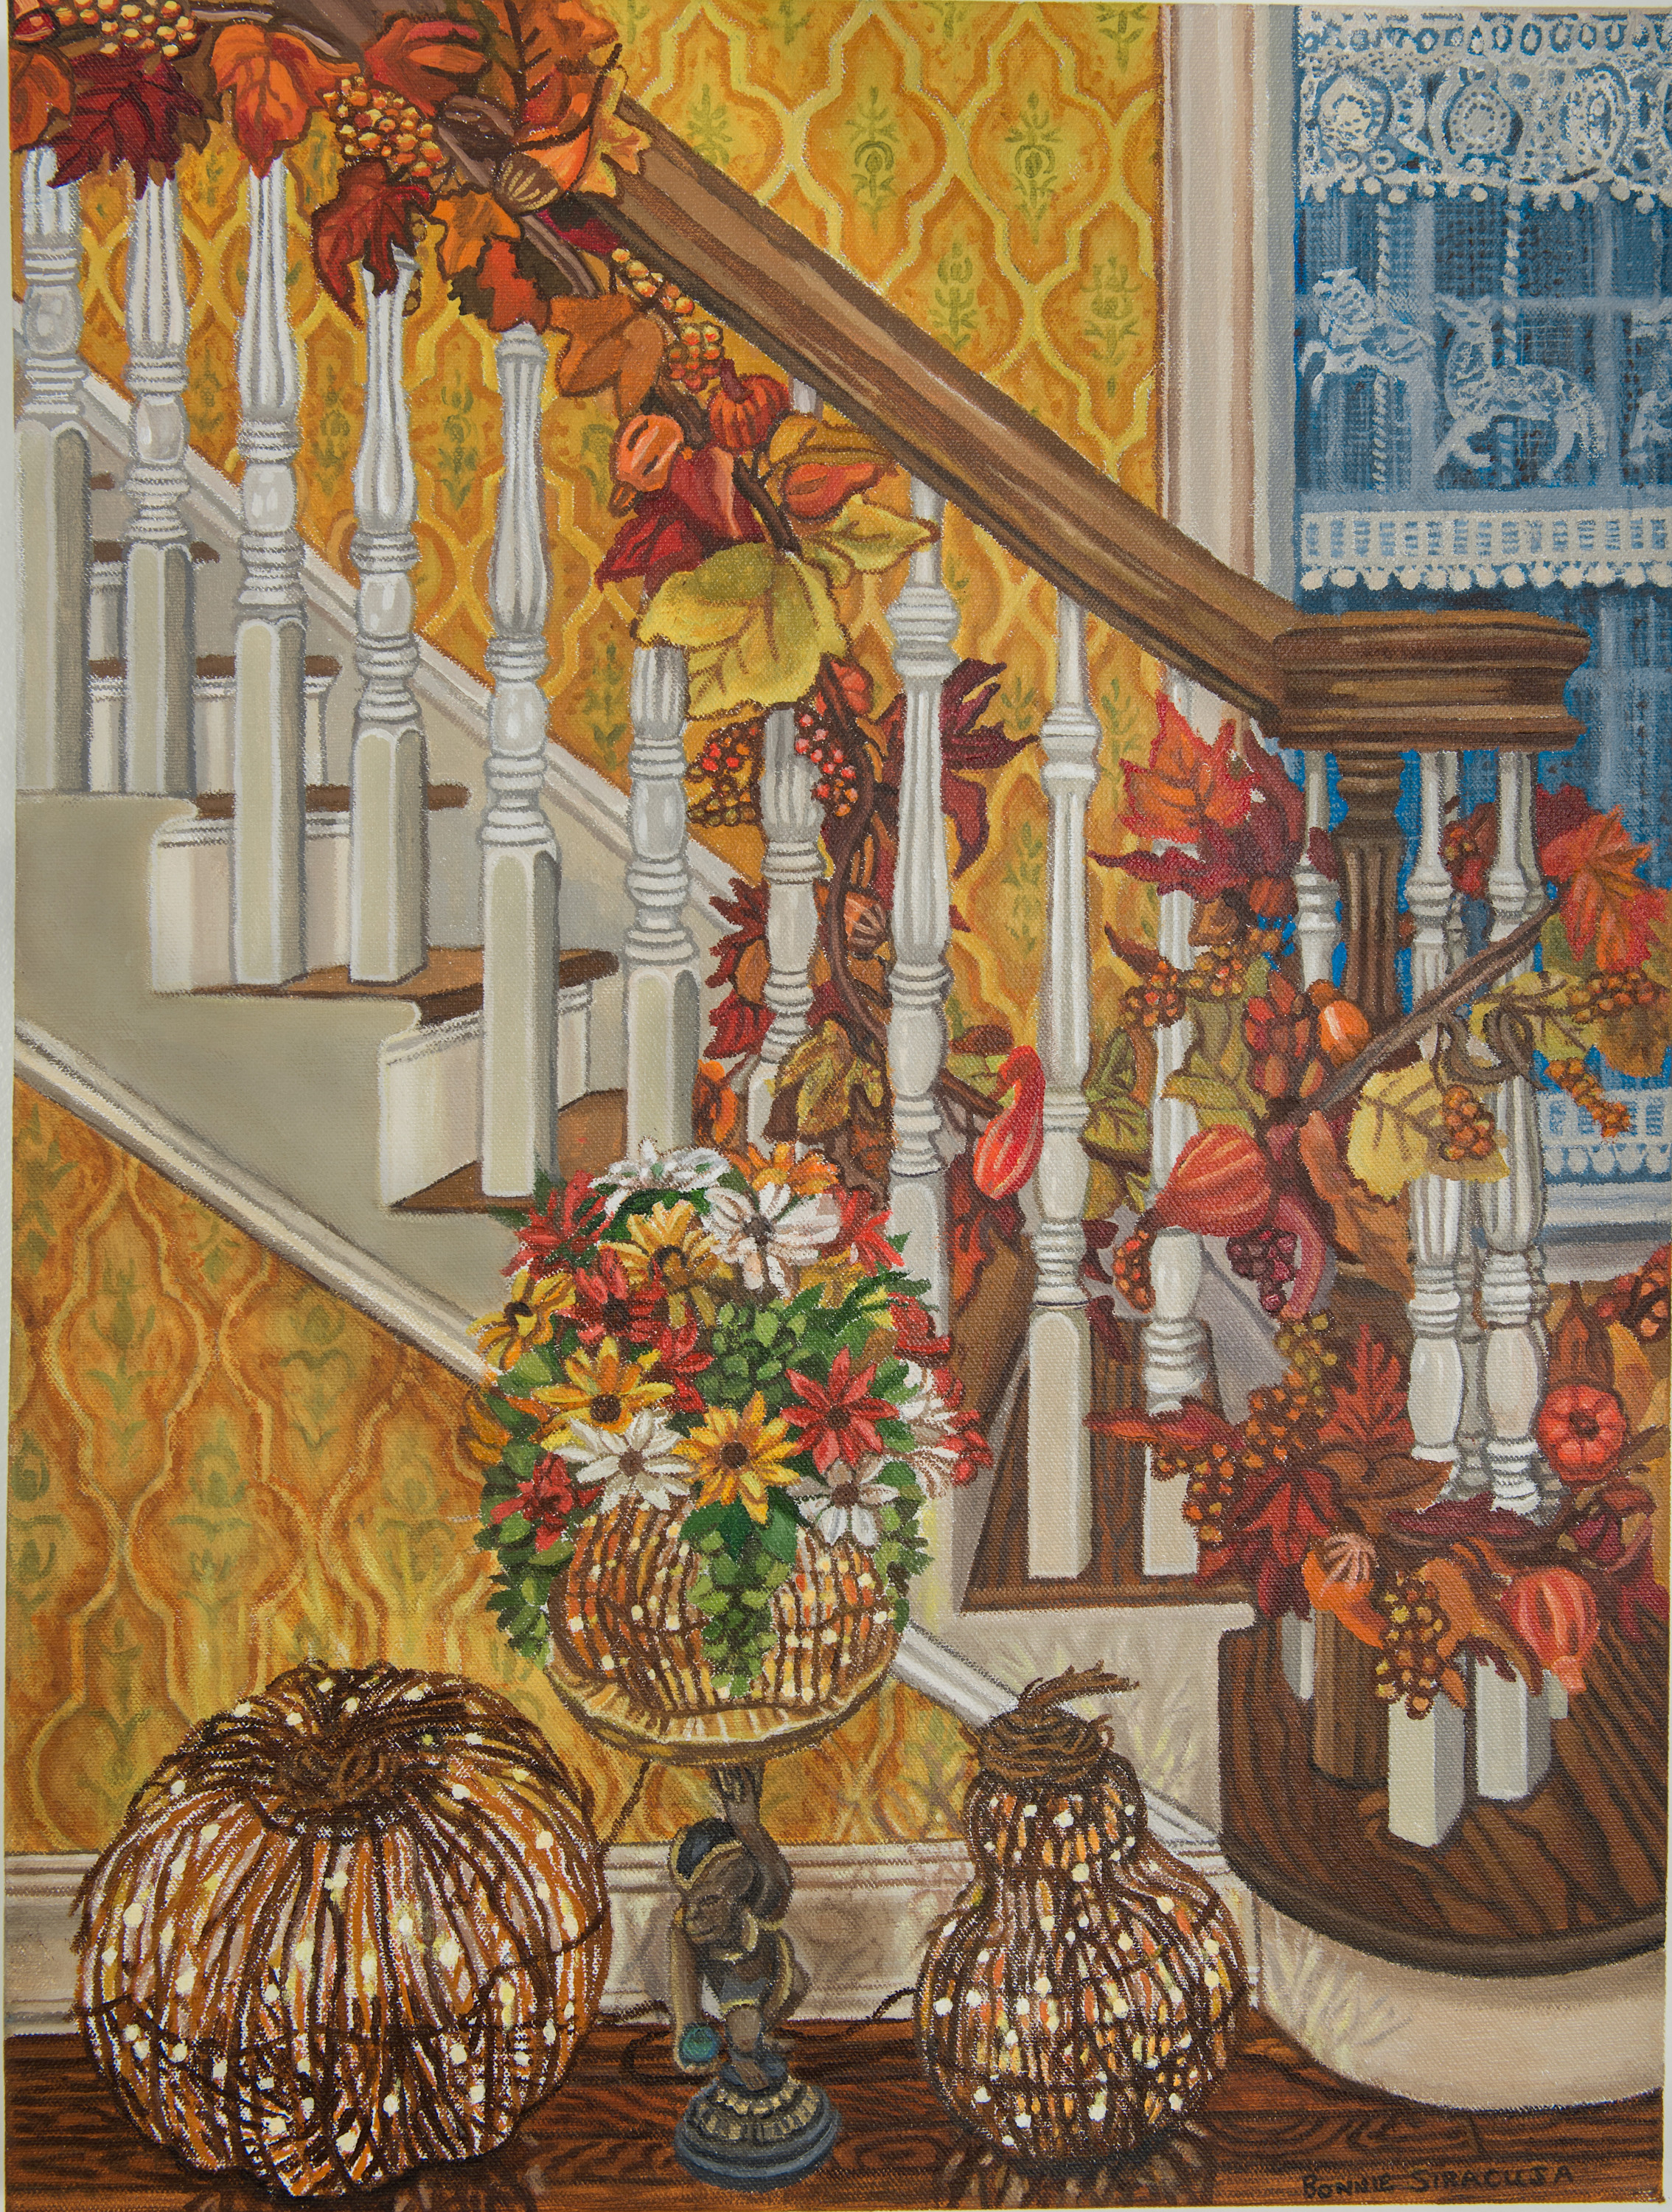 Bonnie siracusa   autumn hues acrylics on canvas 24 x 18 3 000.00 bifrax